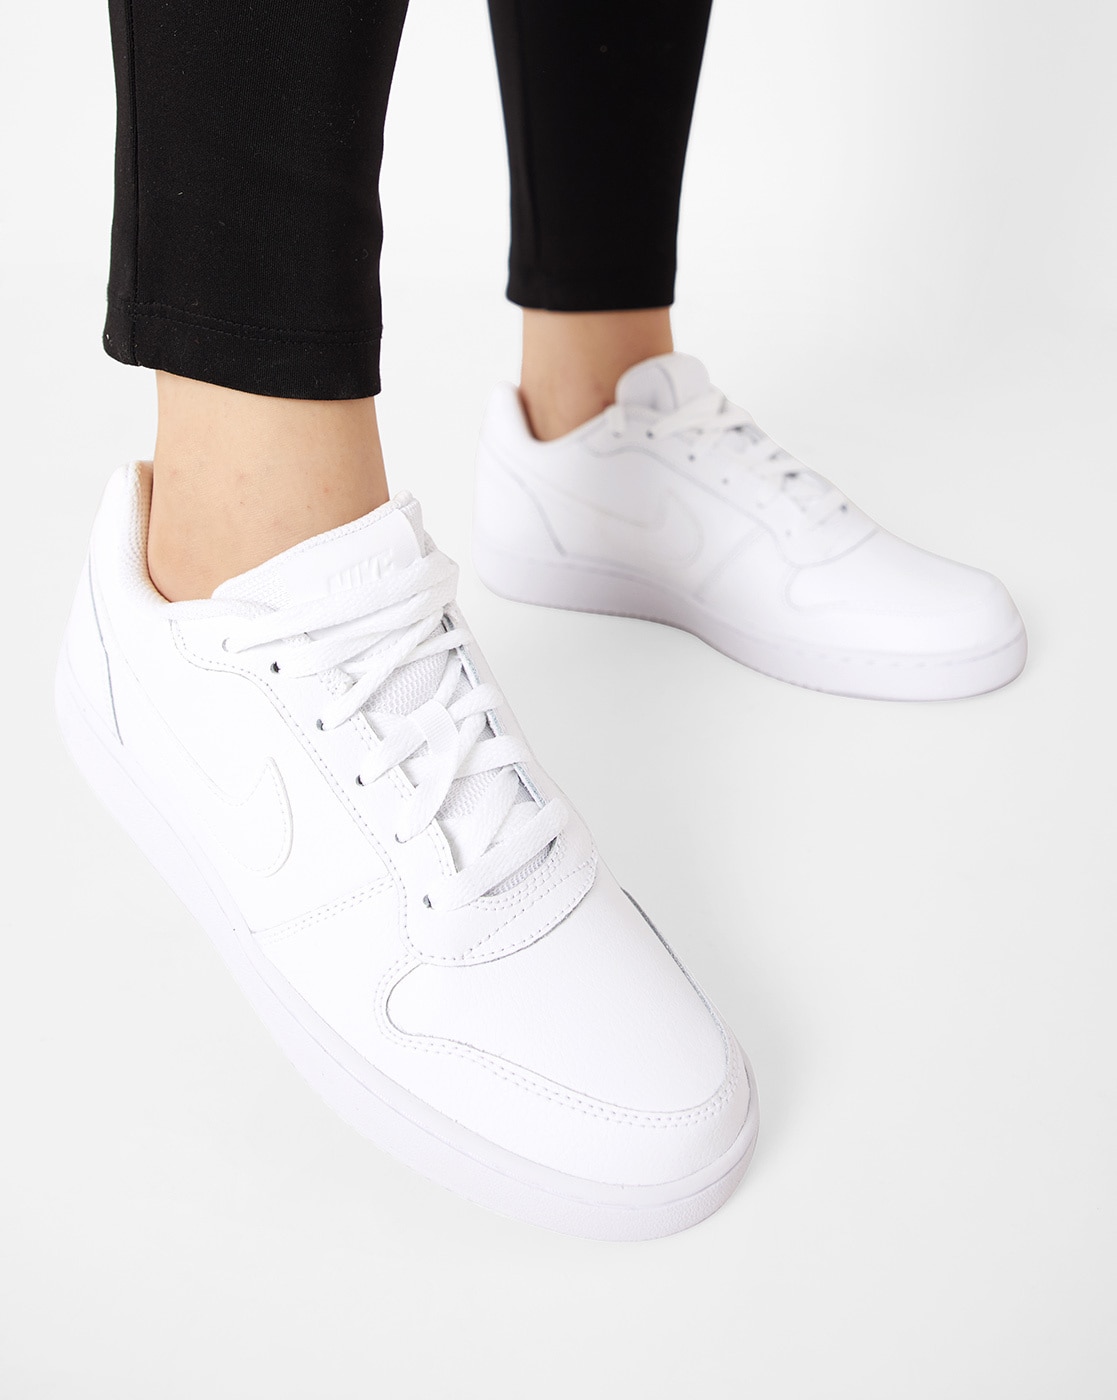 Ebernon Low Triple White Sneaker Shoes - Women's Size 7